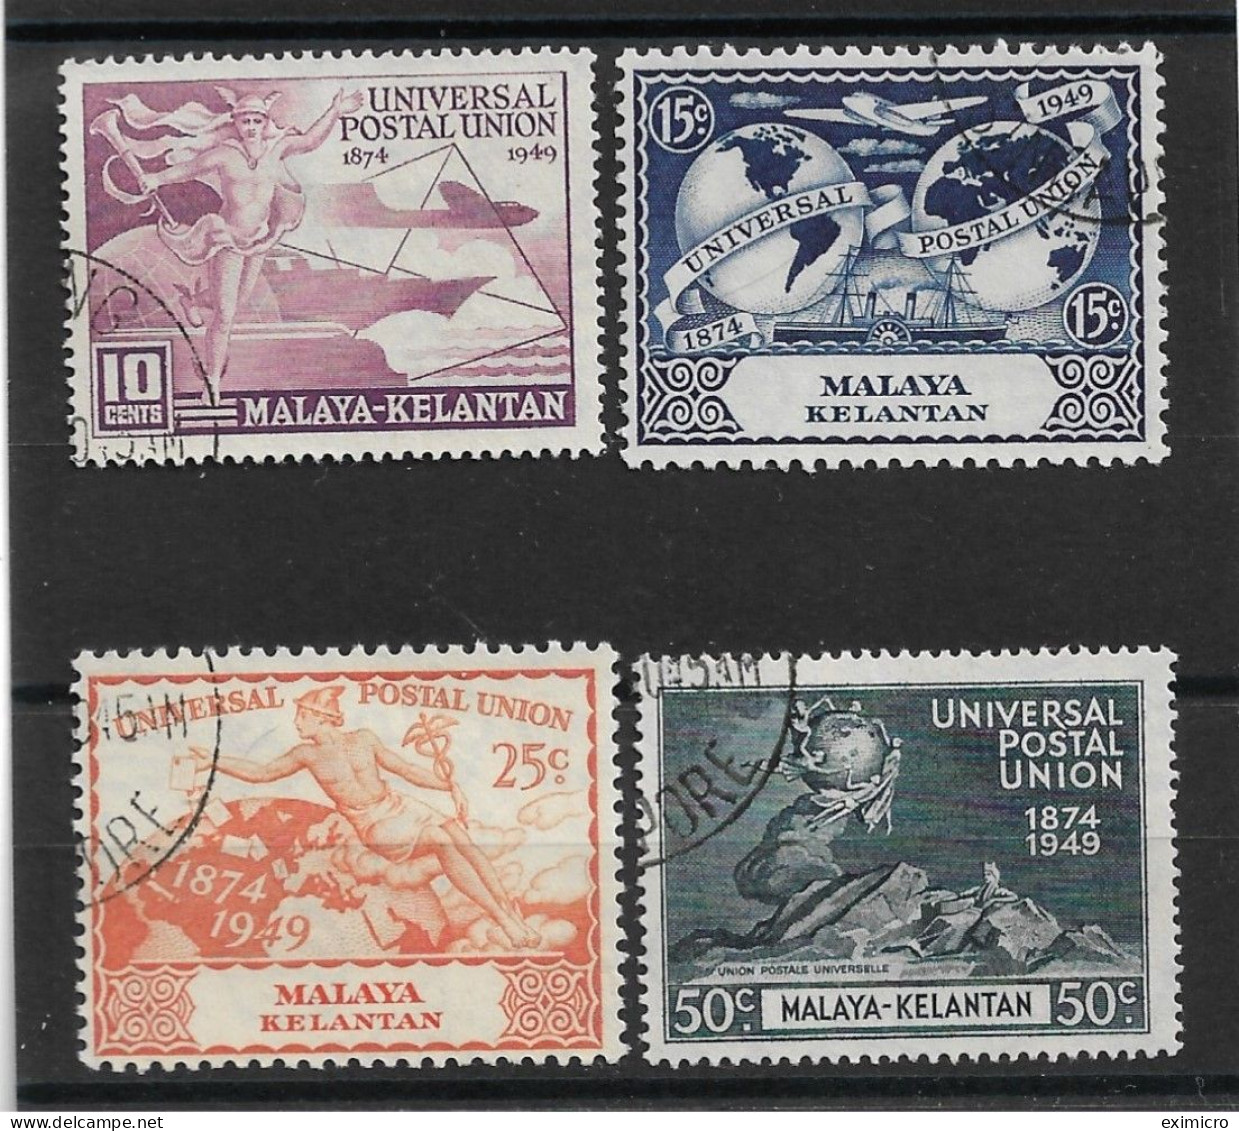 MALAYA - KELANTAN 1949 SET  FINE USED Cat £15 - Kelantan